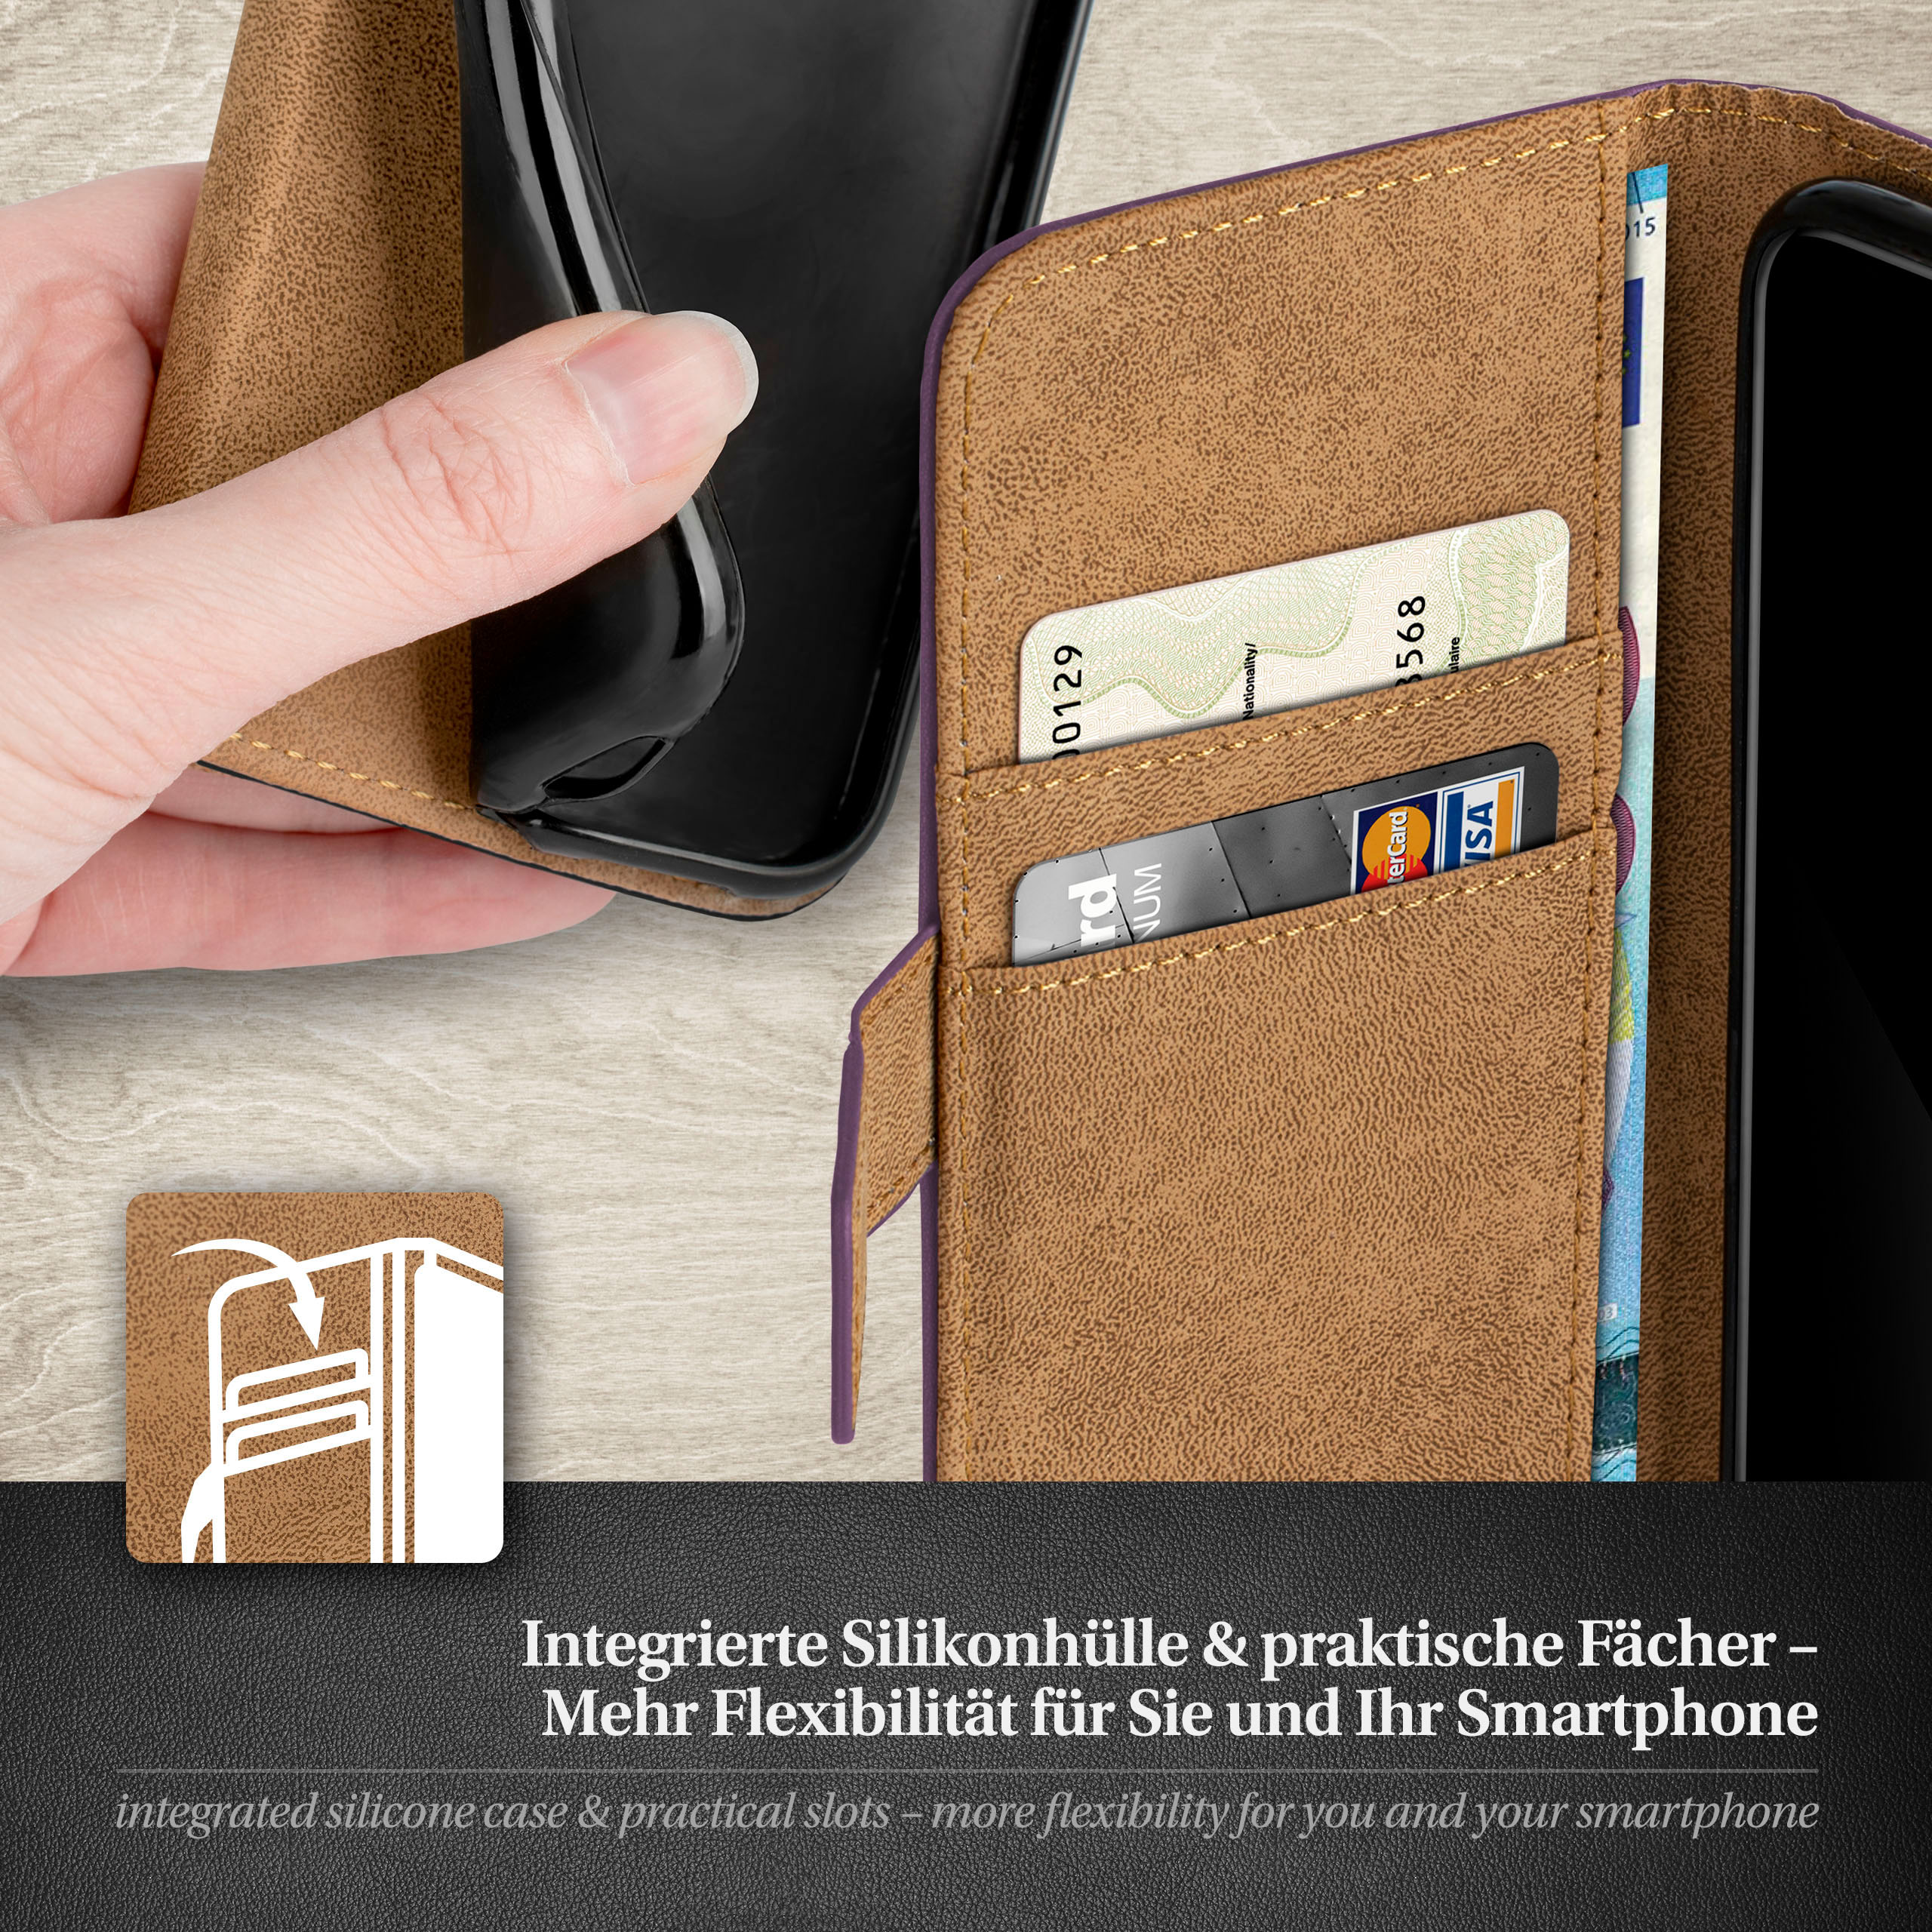 Bookcover, Case, Book 8, MOEX Samsung, Galaxy Note Indigo-Violet